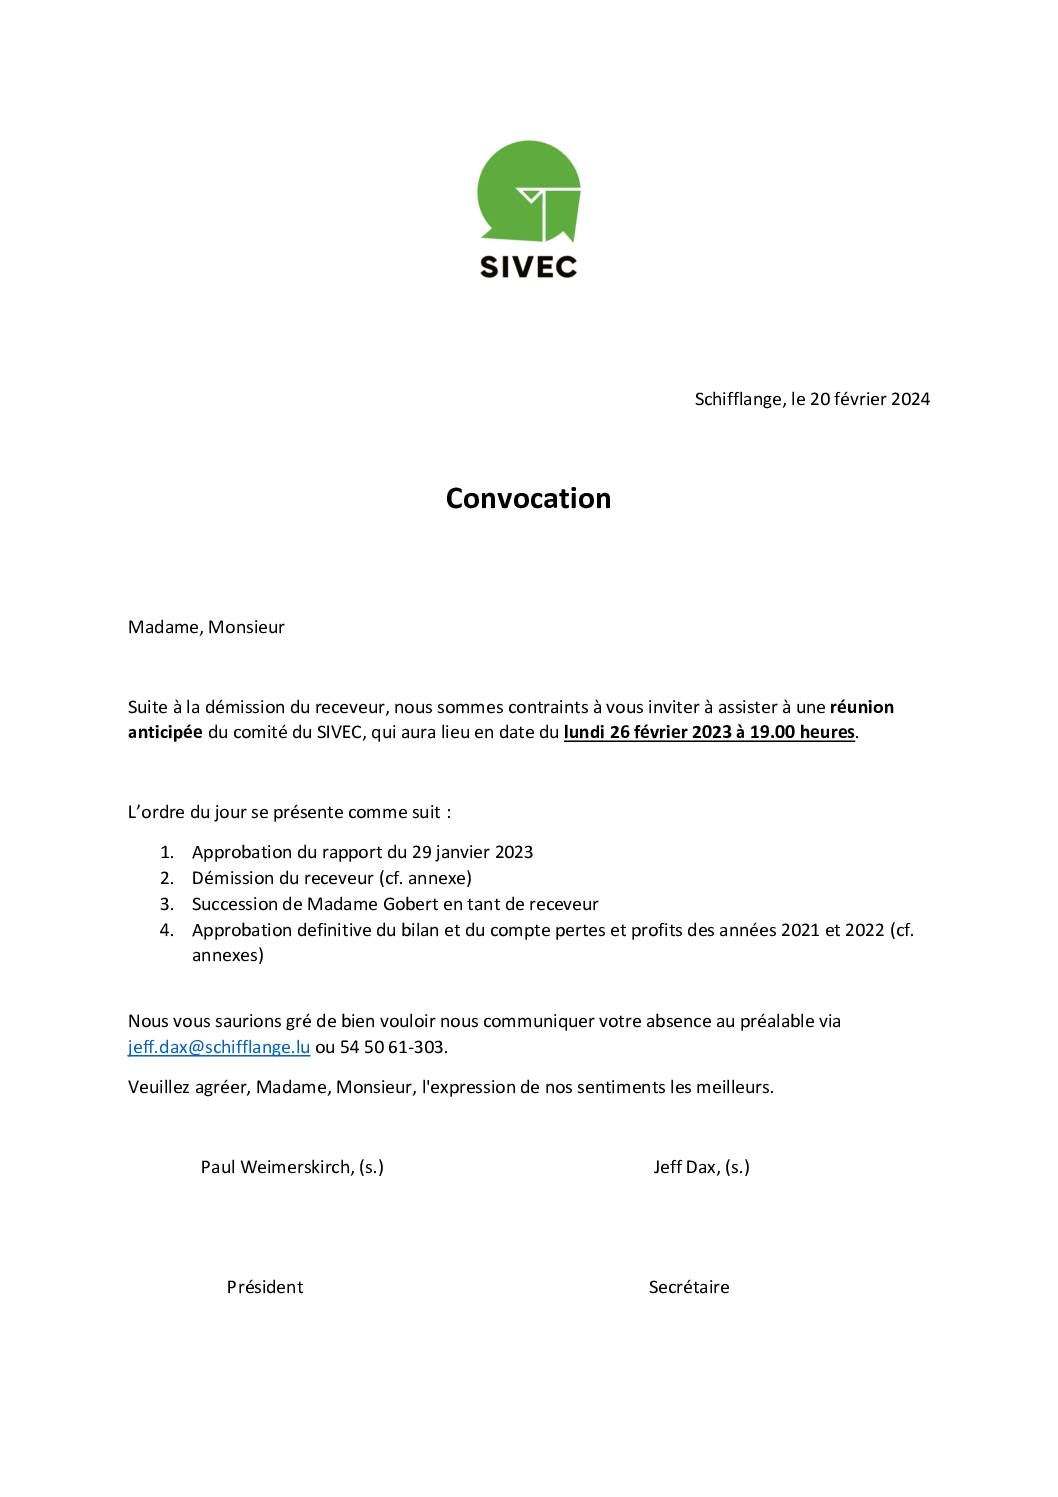 Convocation à la réunion anticipée du comité du SIVEC - 26.02.2024